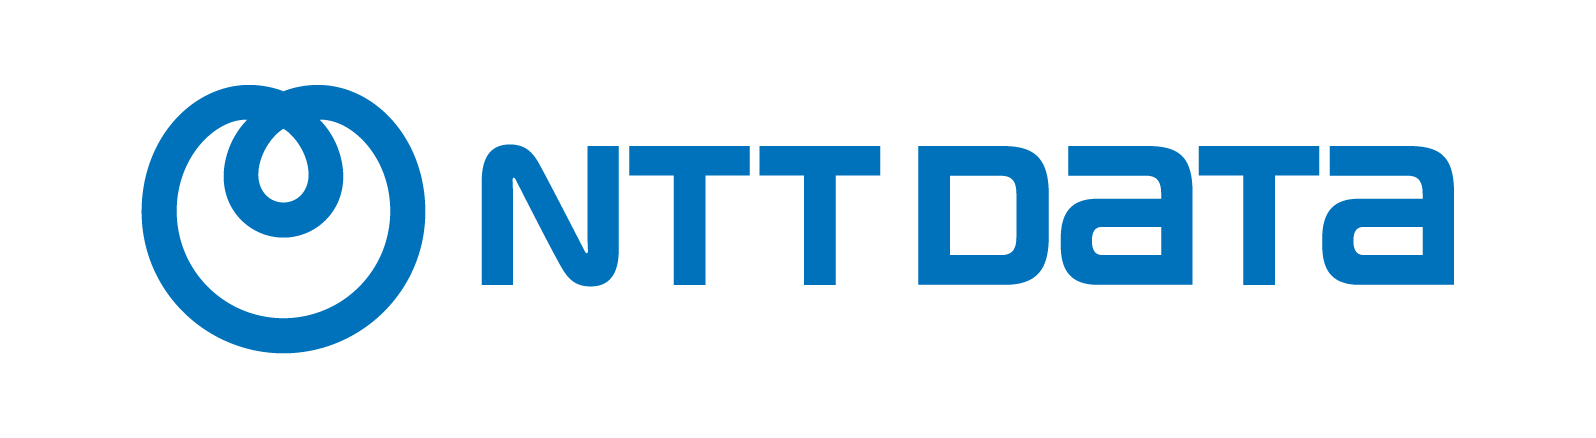 Logo_NTTDATA